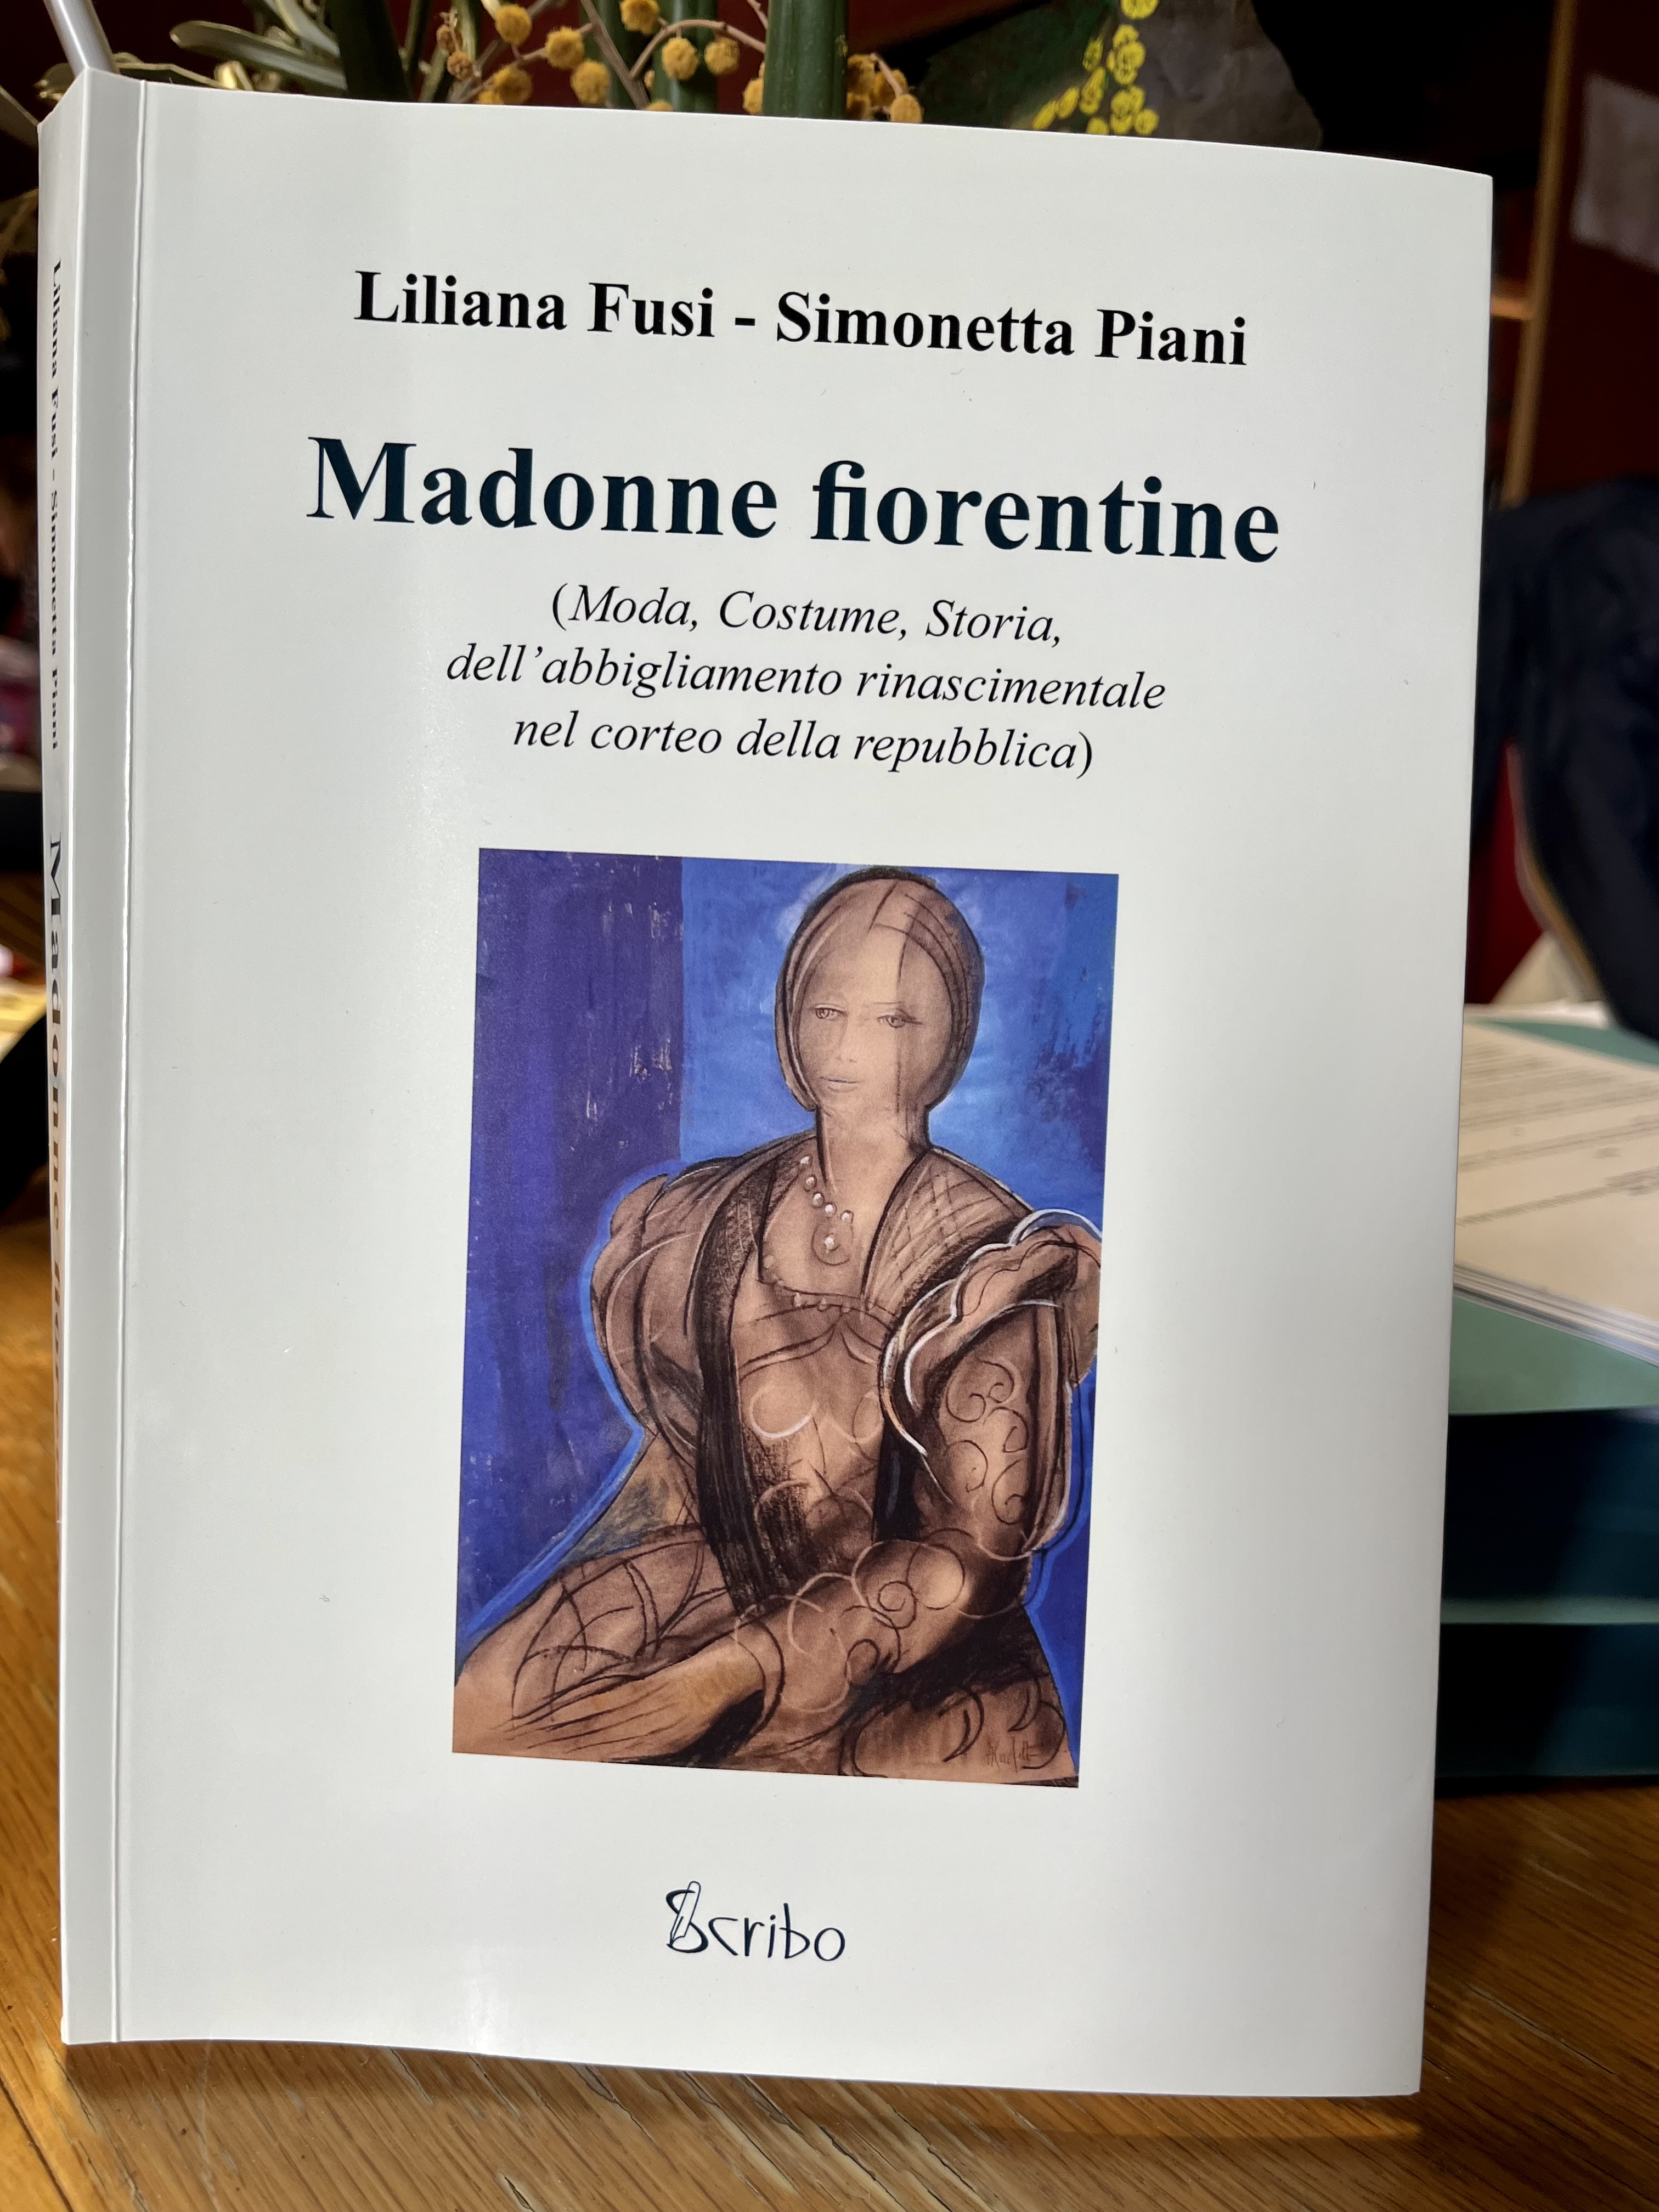 Madonne fiorentine, il rinascimento di una tradizione